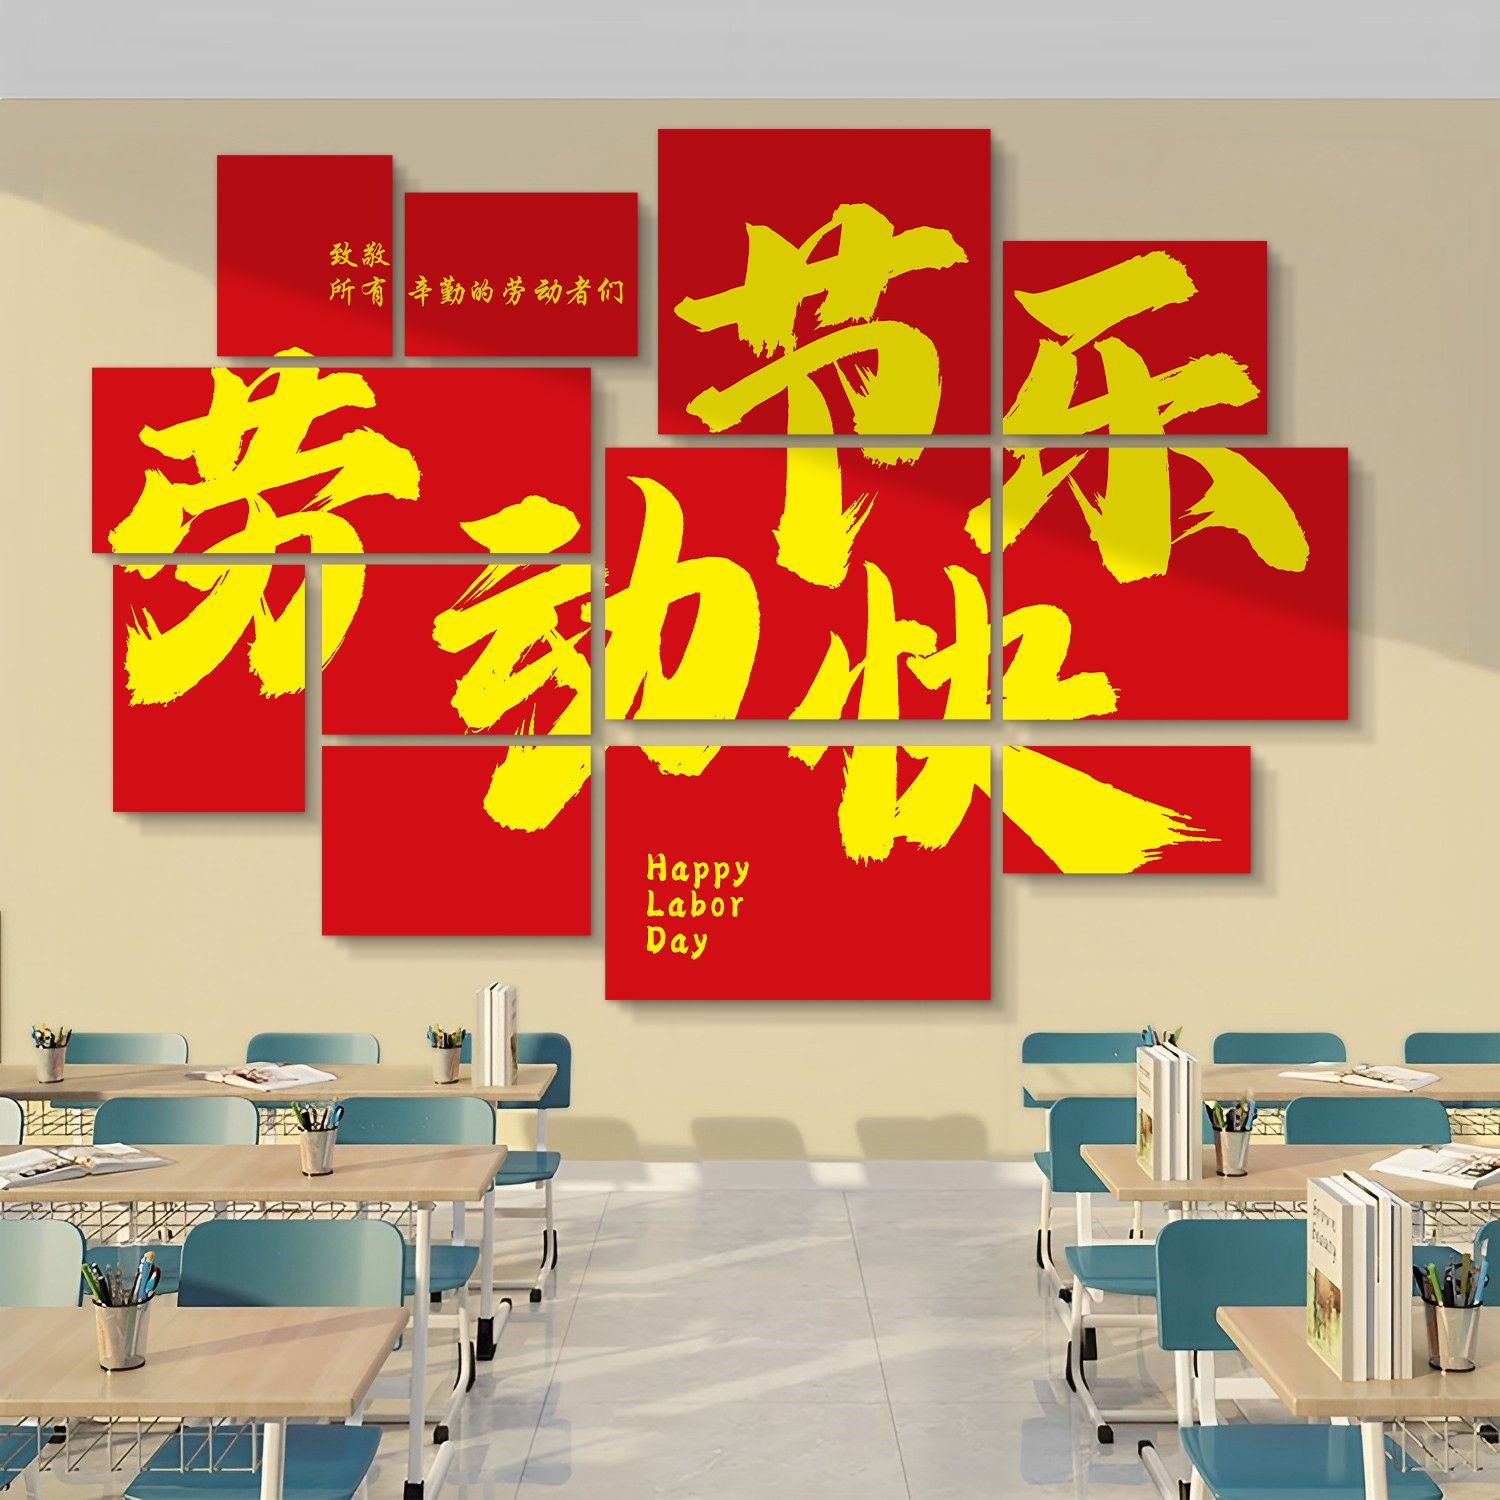 五一劳动节装饰墙贴教室班级教育主题文化墙幼儿园环创主题墙成品